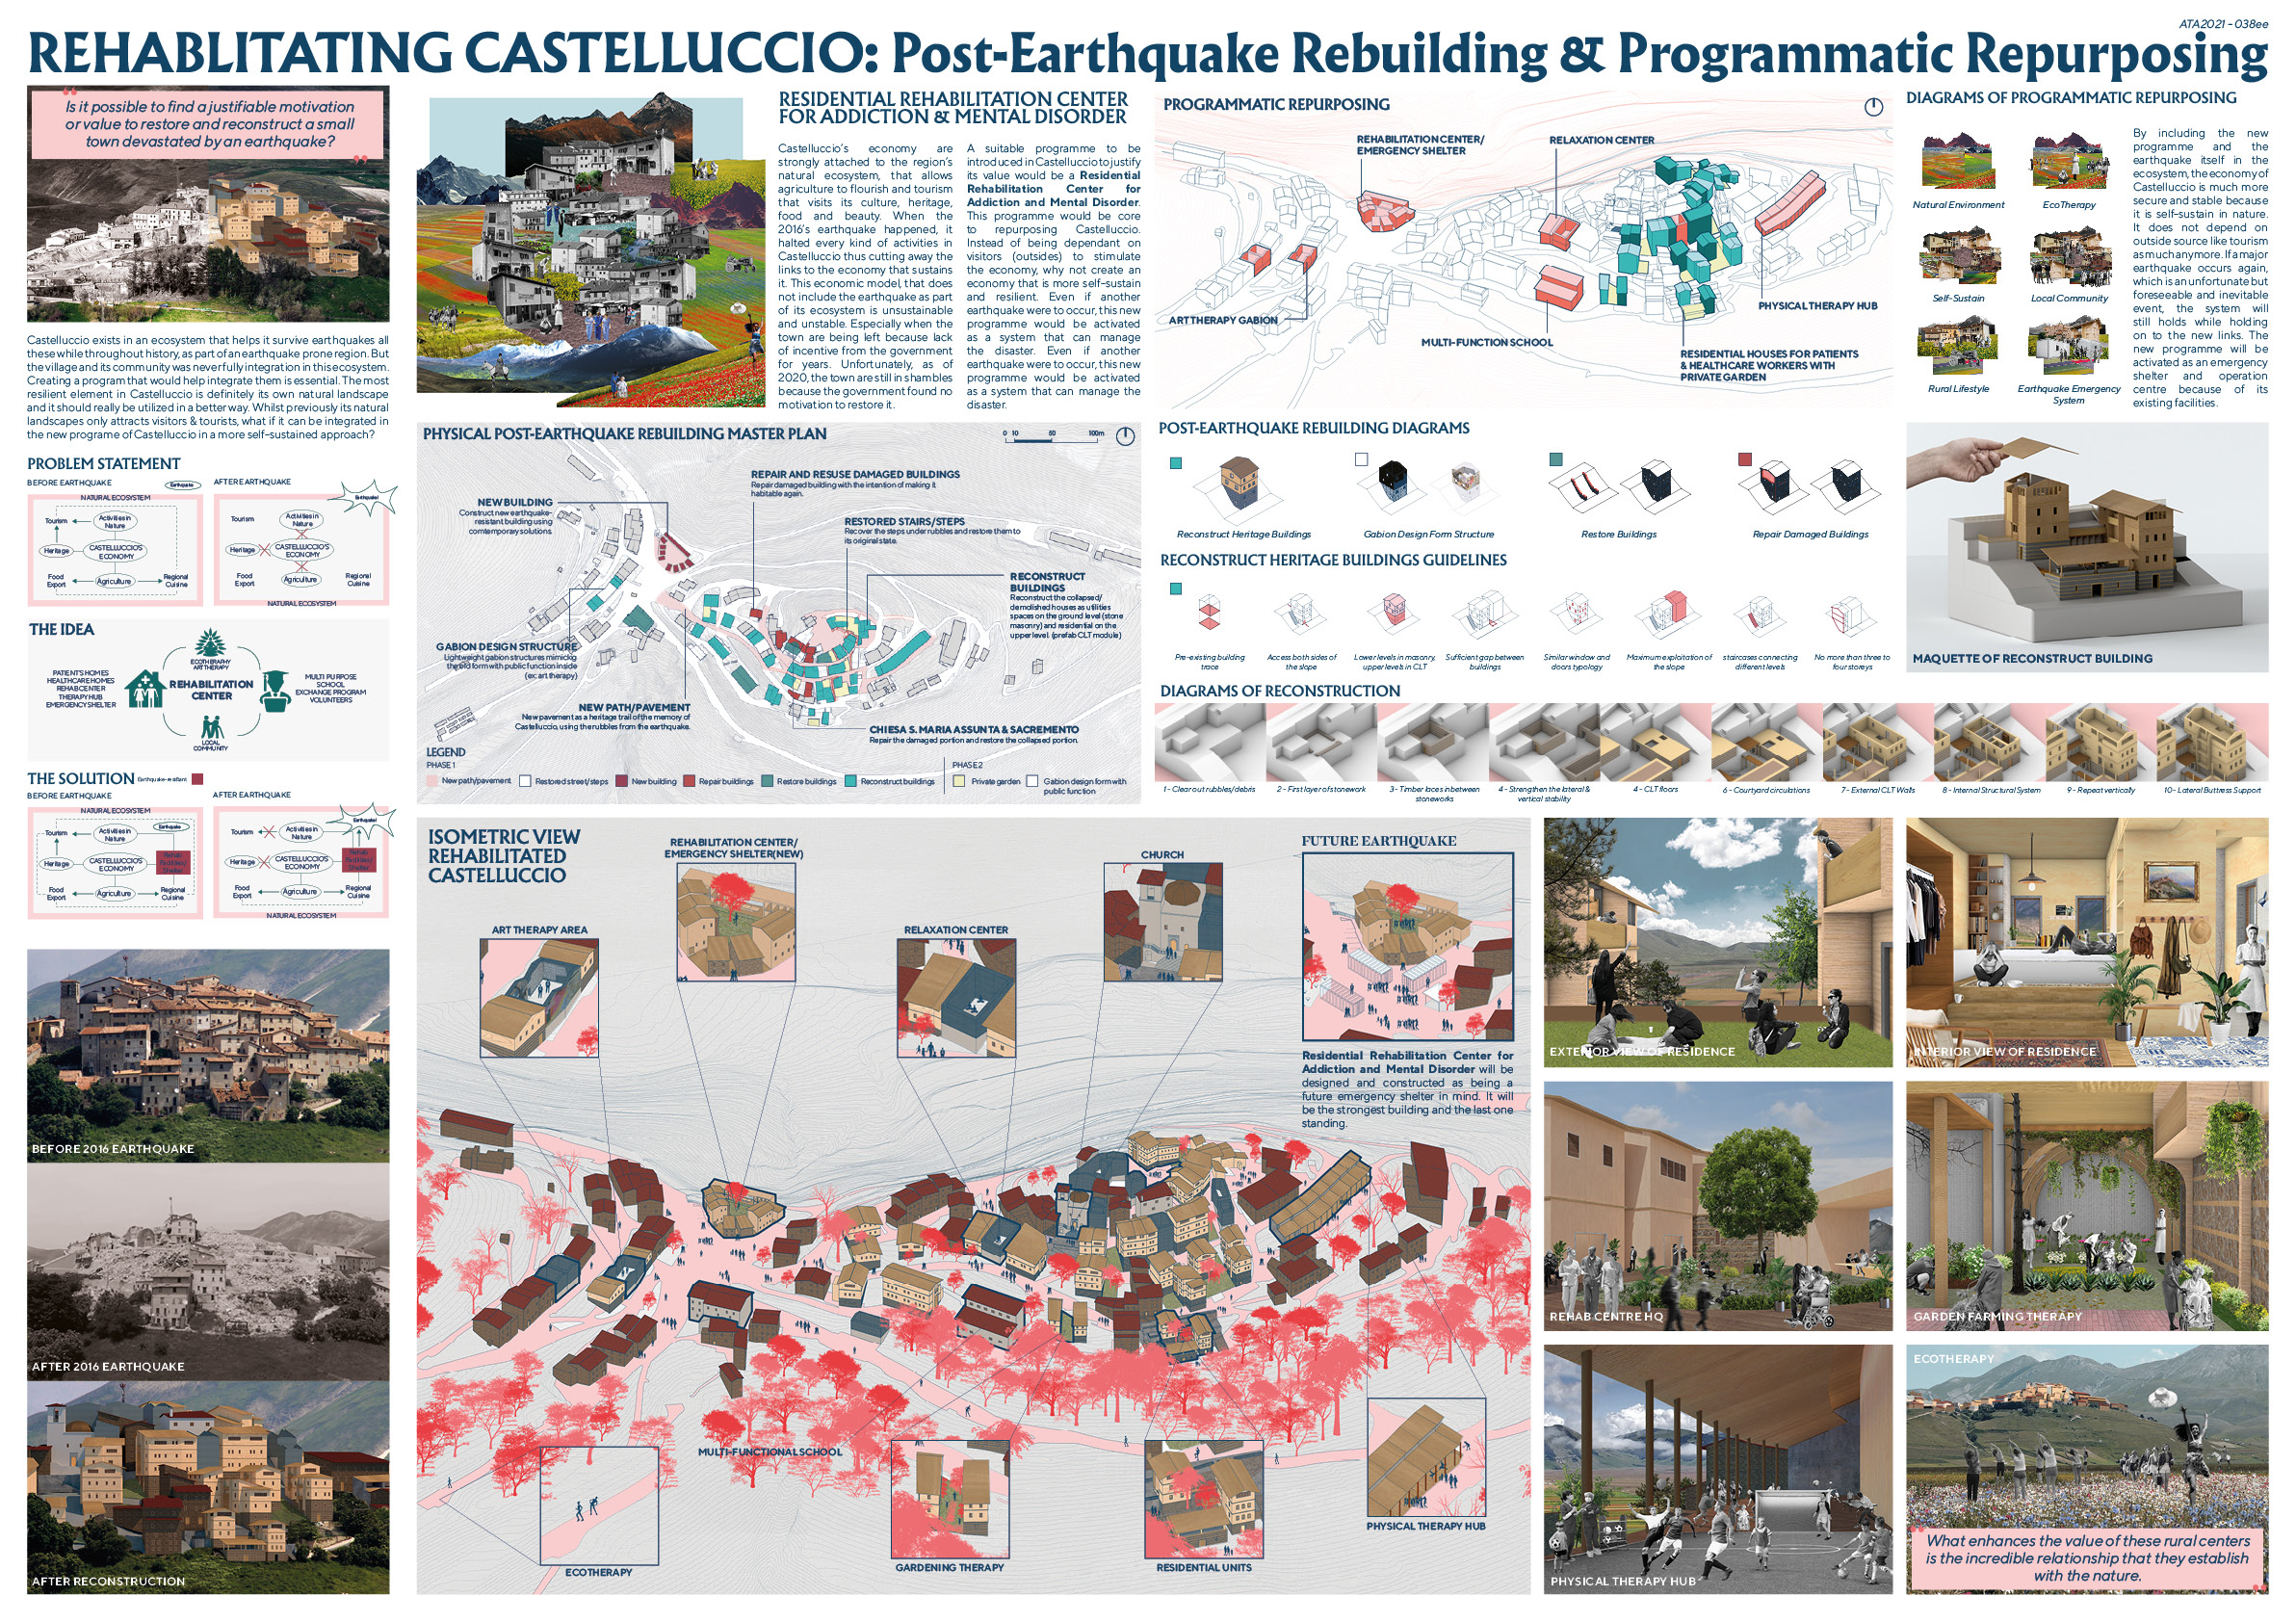 Rehabilitating Castelluccio: Post-Earthquake Rebuilding & Programmatic Re-purposing Board